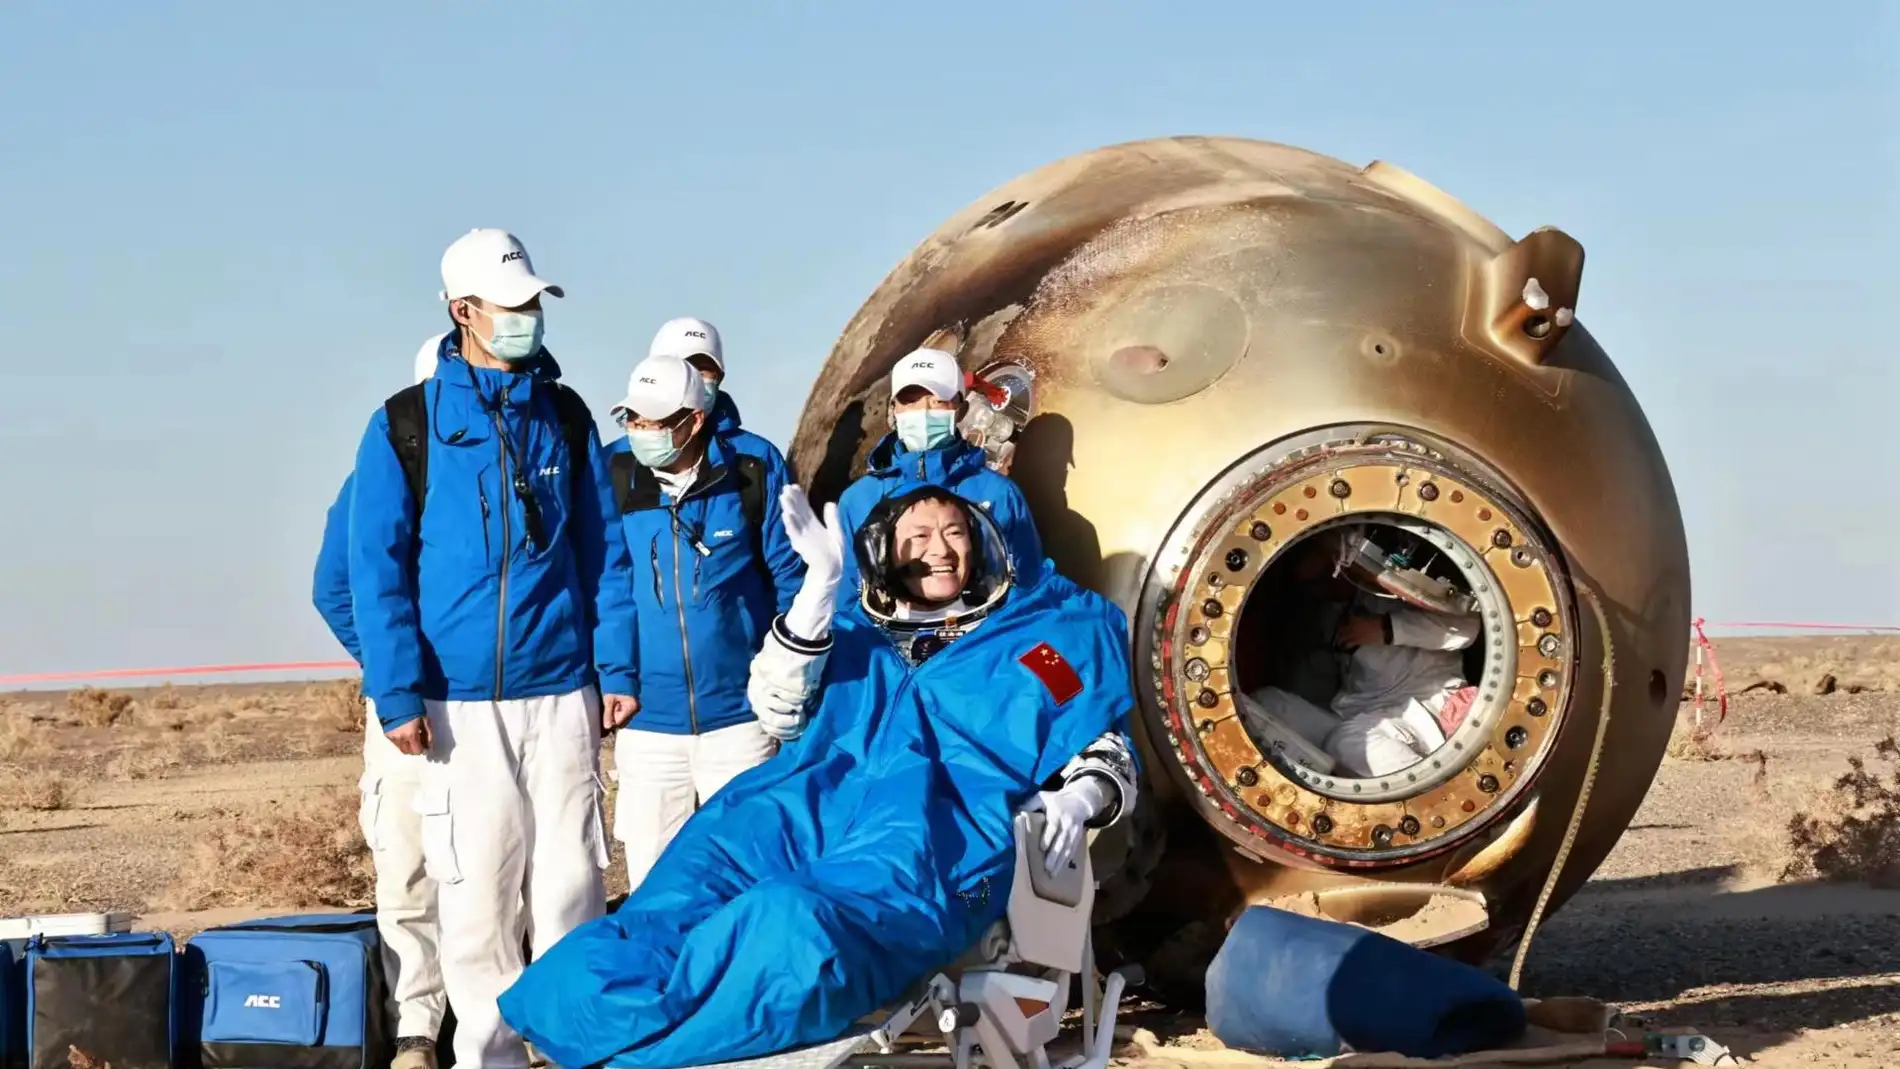 La misión china Shenzhou-16 regresa a salvo a la Tierra con tres astronautas chinos procedentes de la estación espacial Tiangong